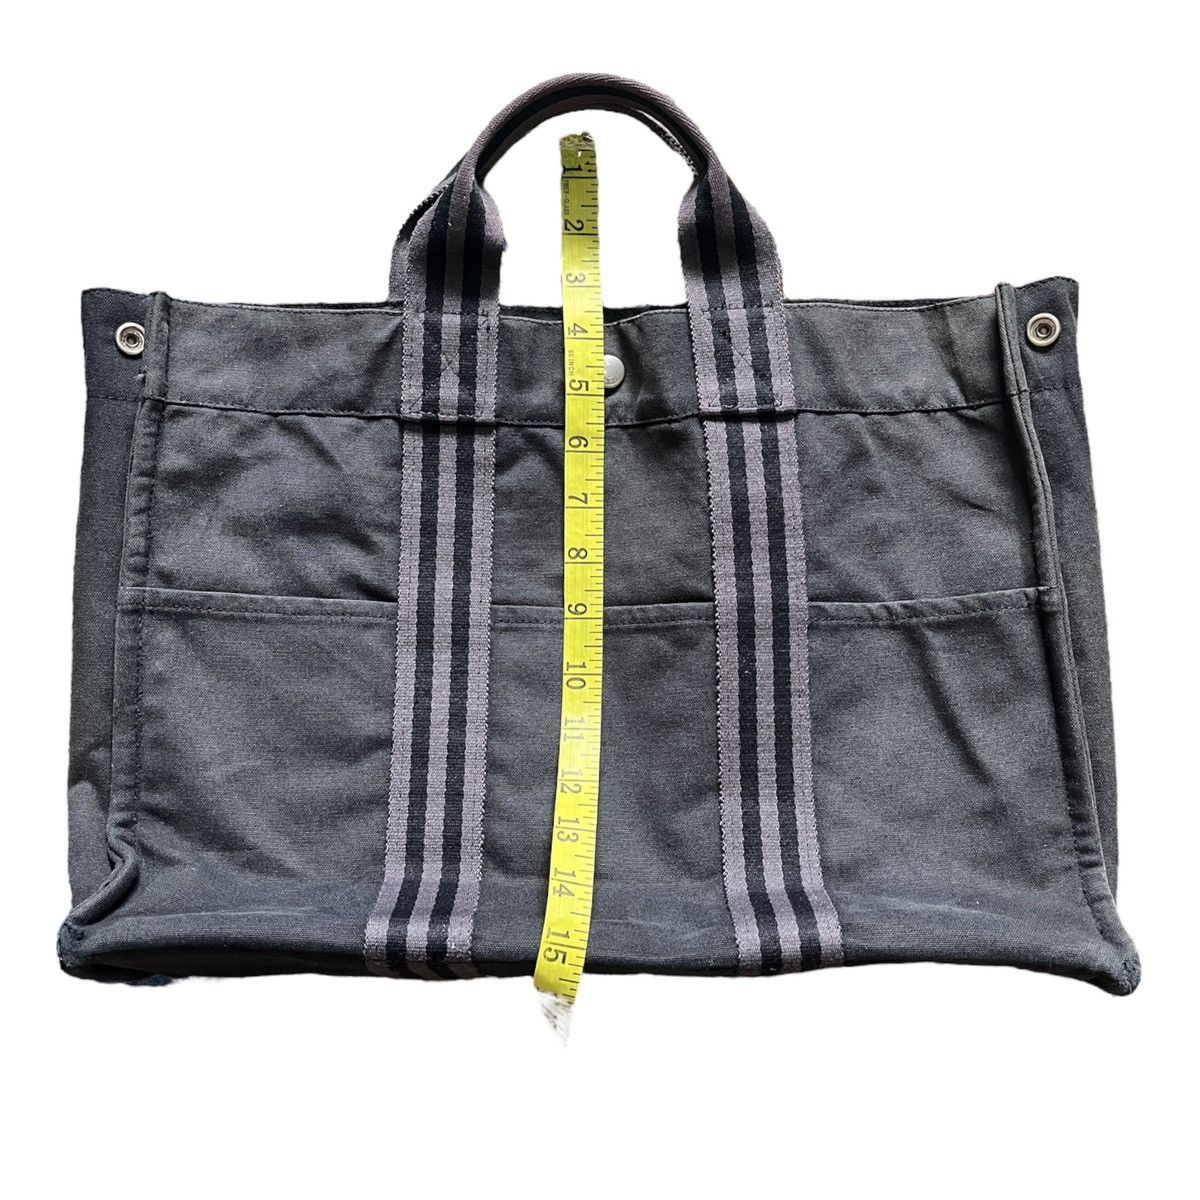 Hermes Birkin Tote Bag Waterproof - 3